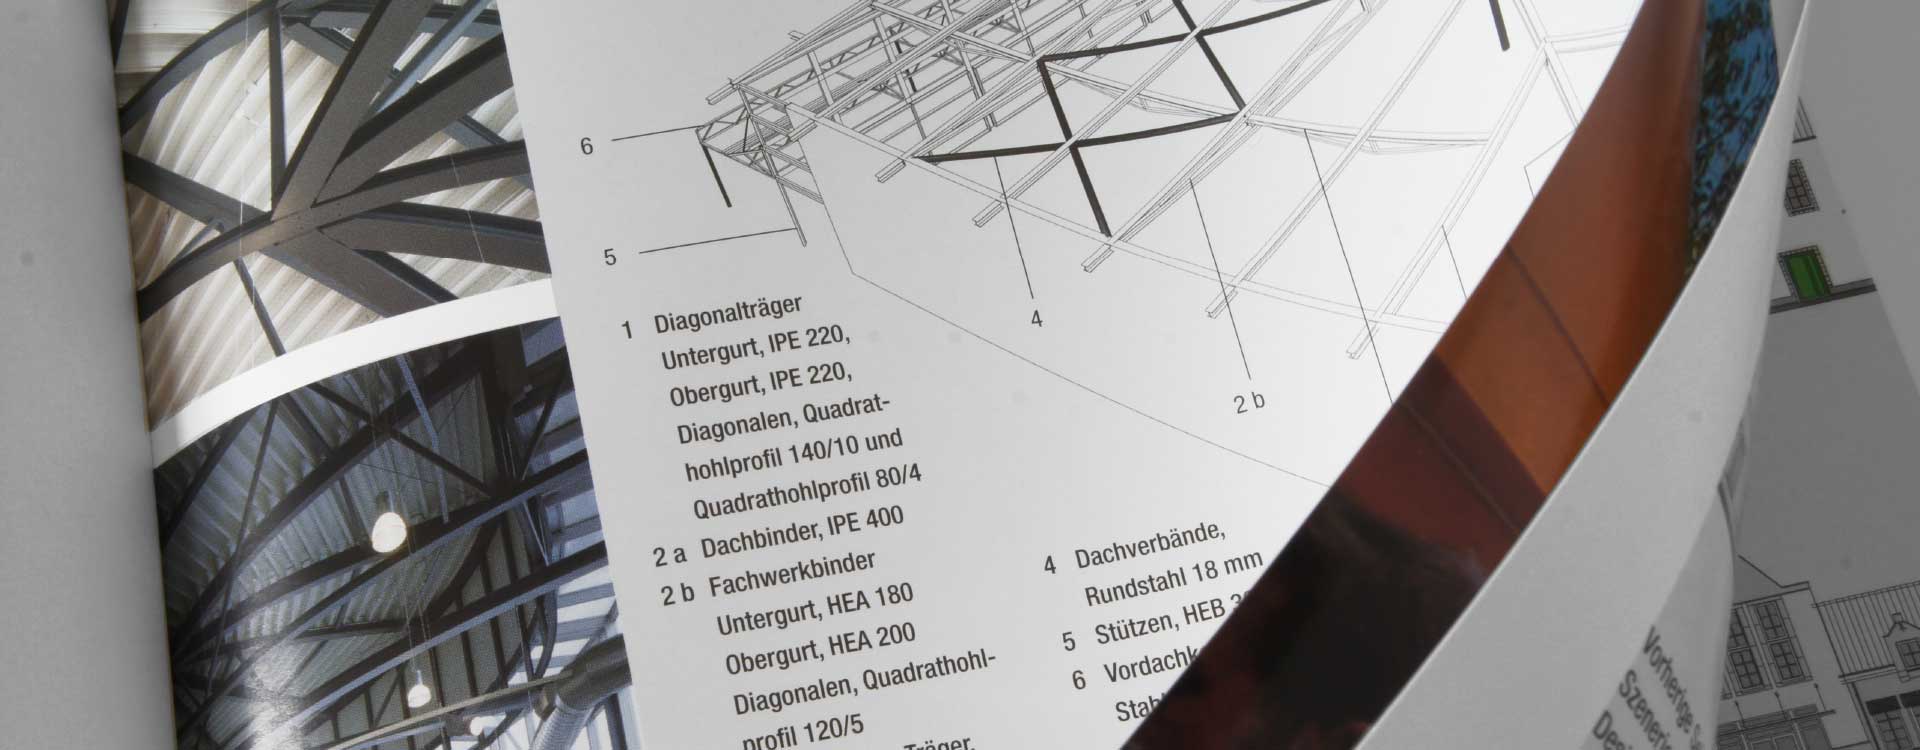 Brochure Einkaufserlebnis in Stahl – Designer Outlets Stahl-Informations-Zentrum; Design: Kattrin Richter | Graphic Design Studio